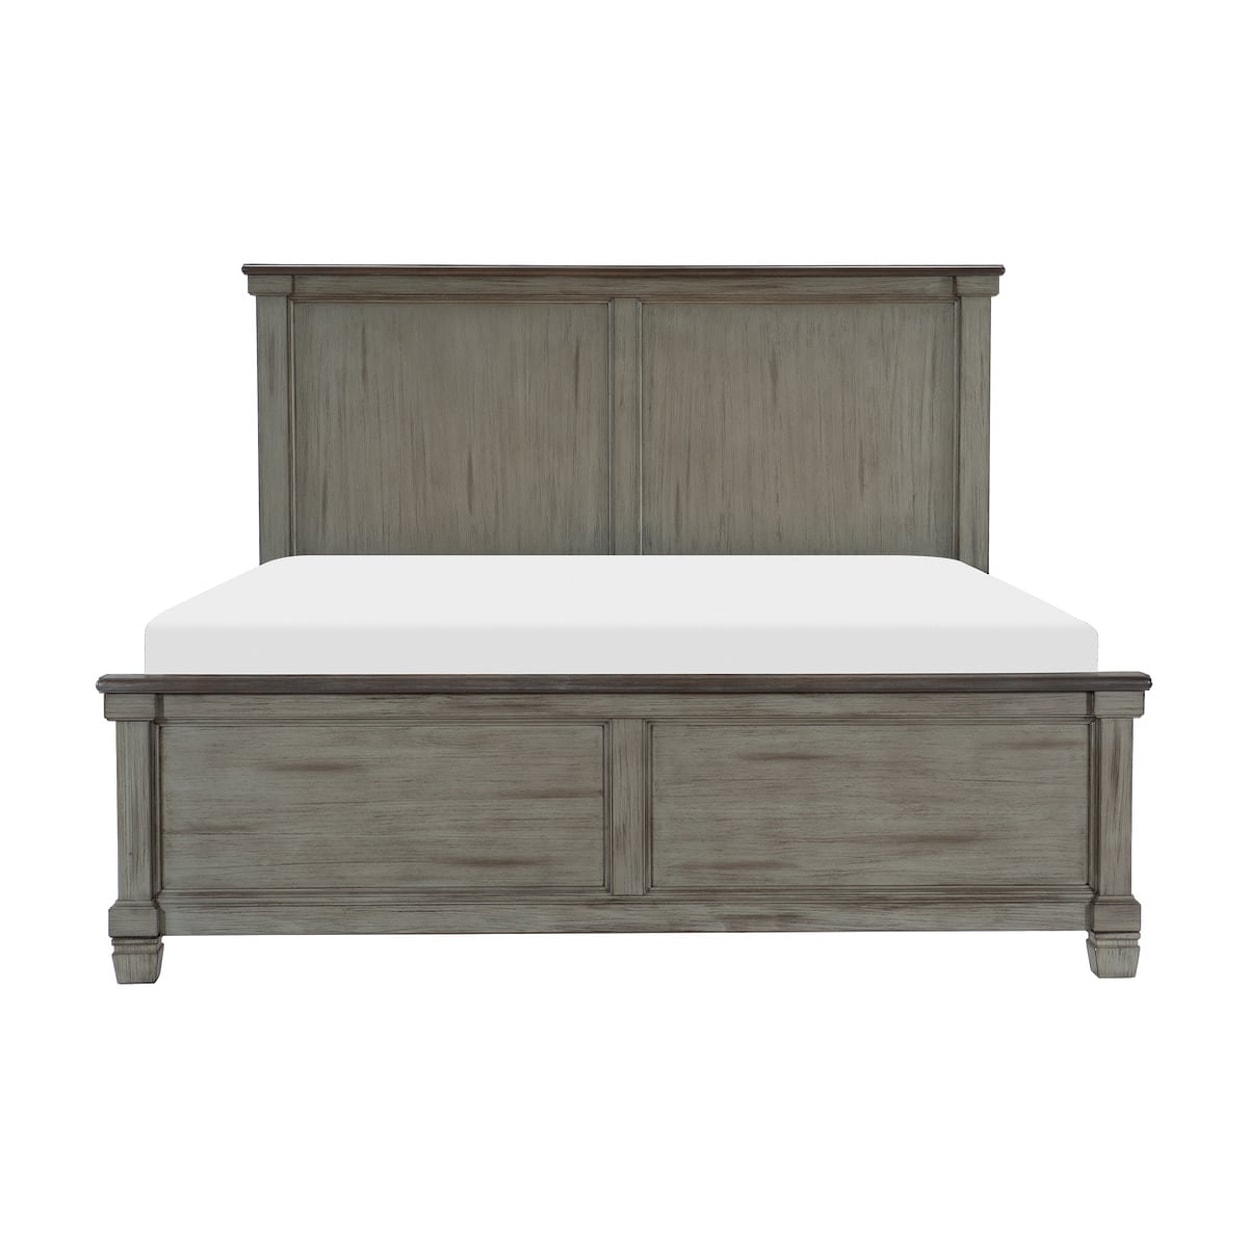 Homelegance Furniture Weaver King Bed